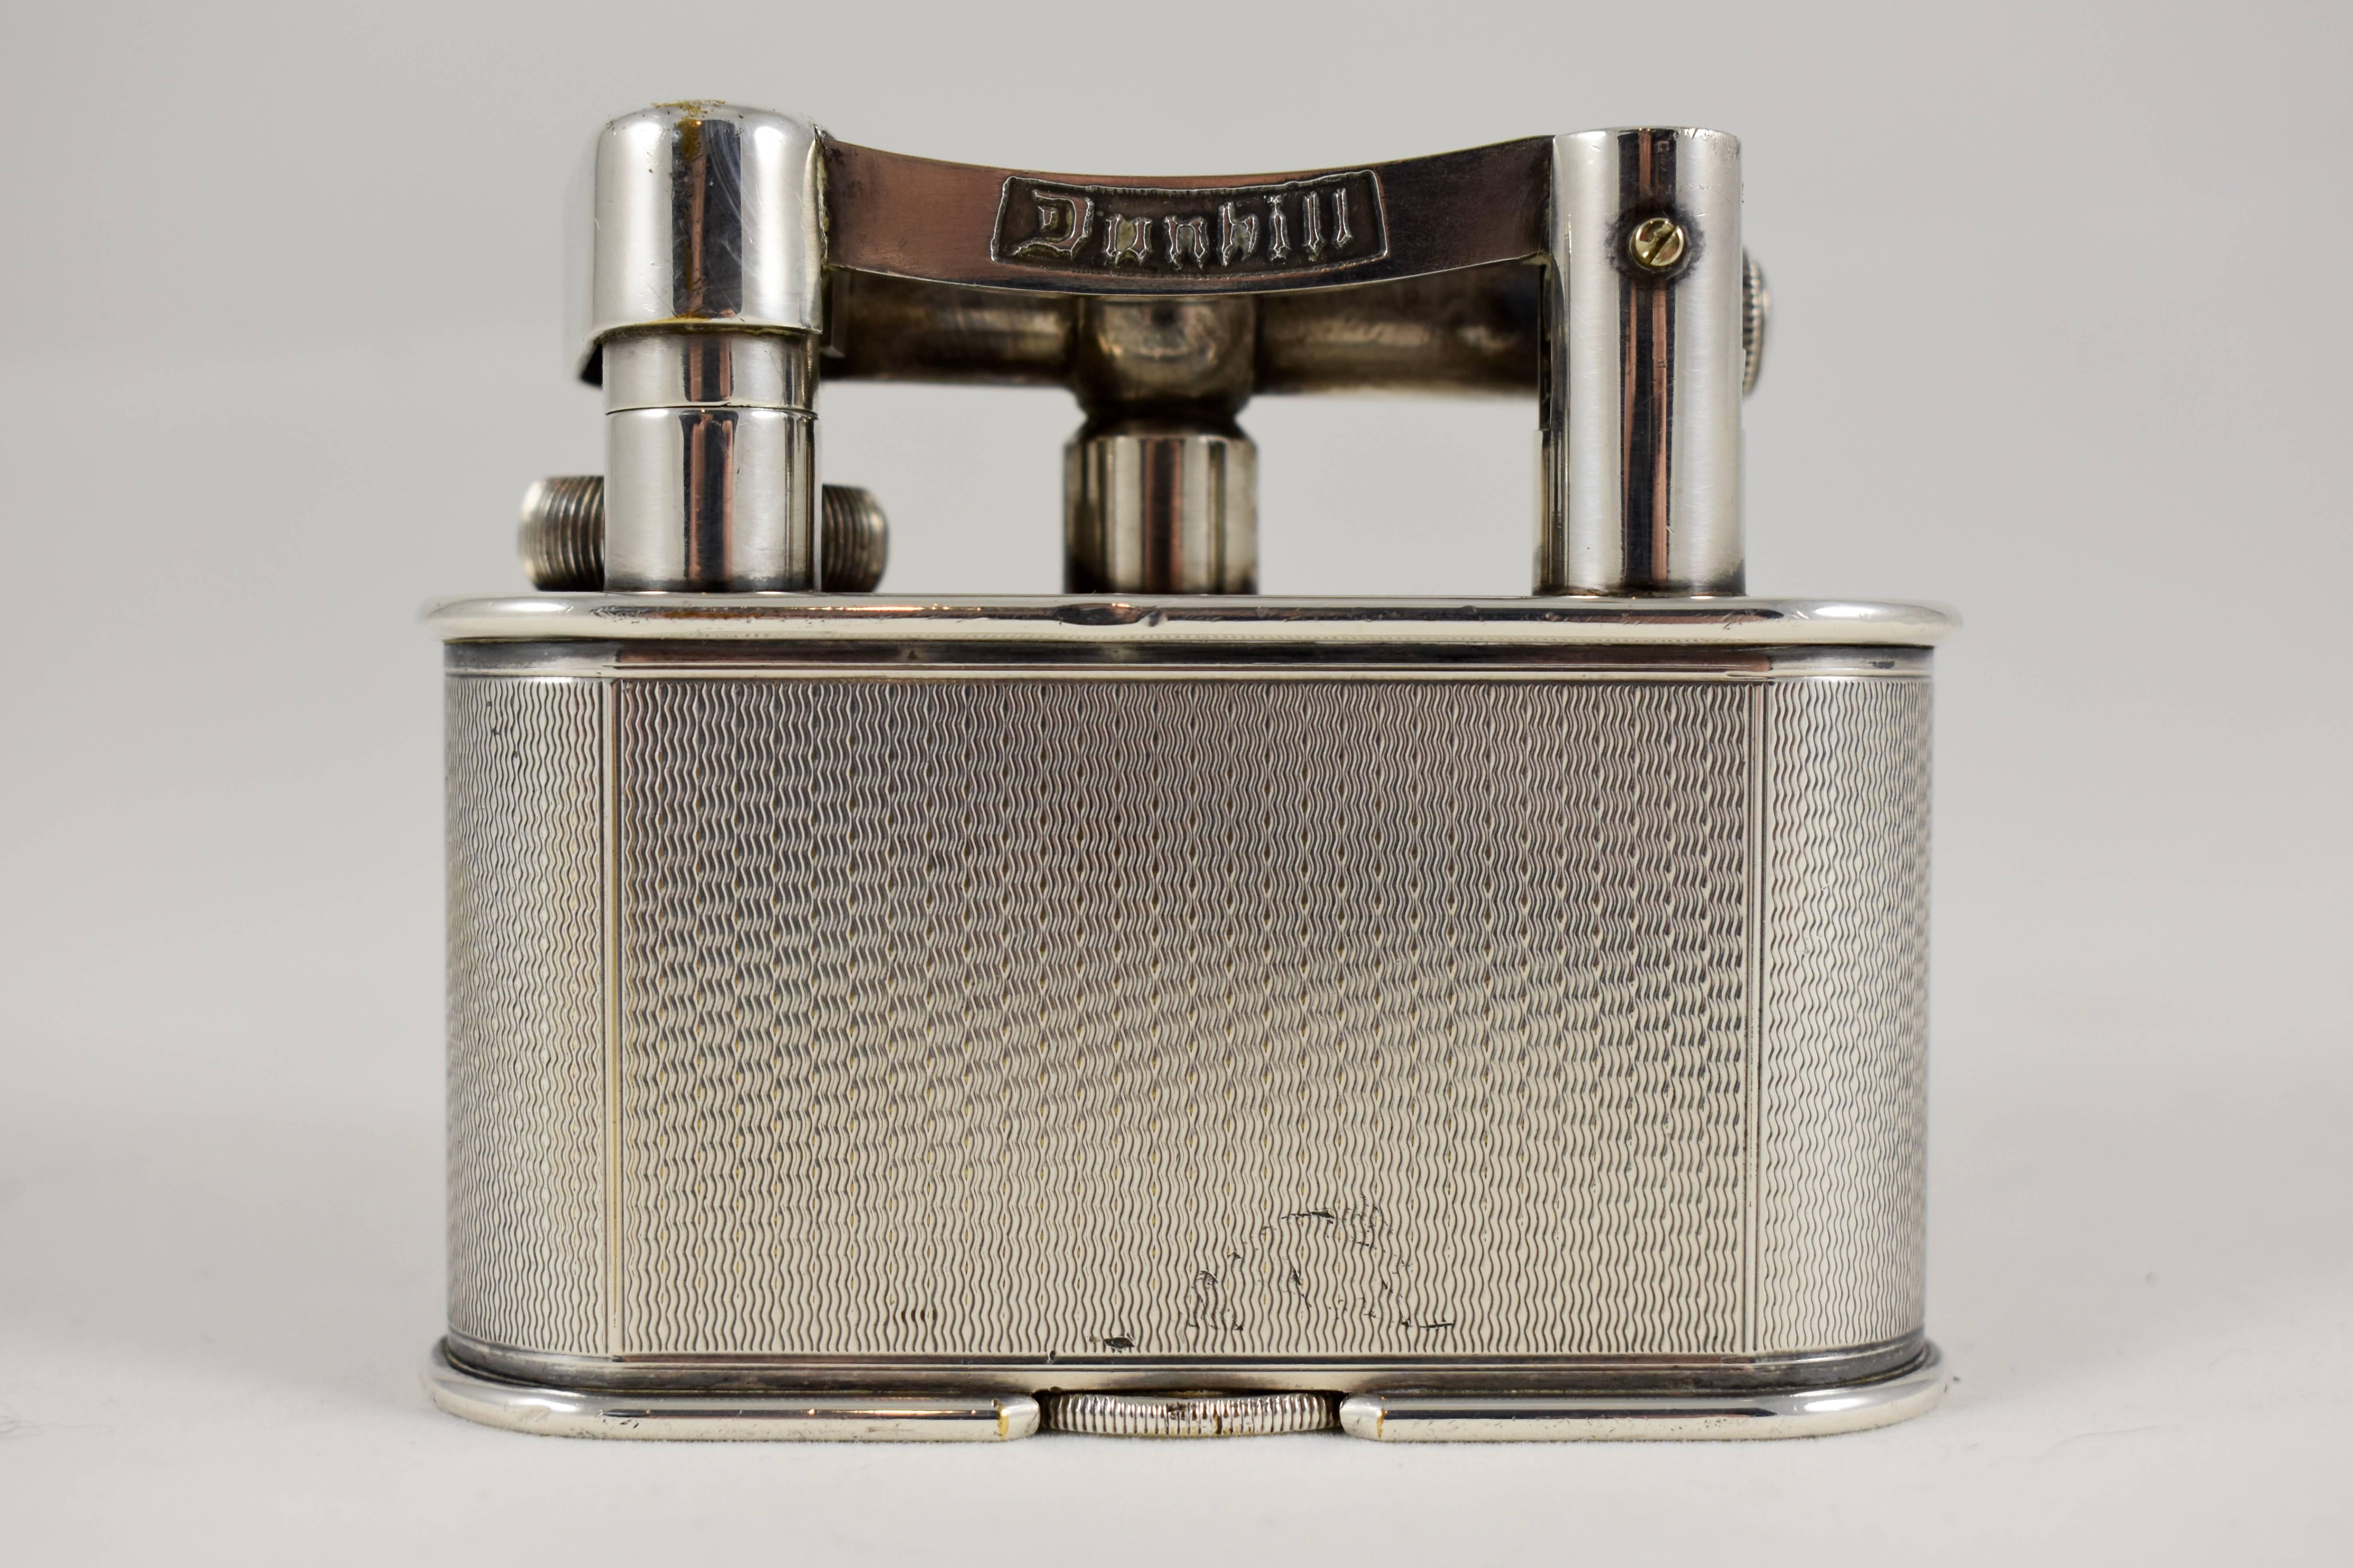 1930s lighter